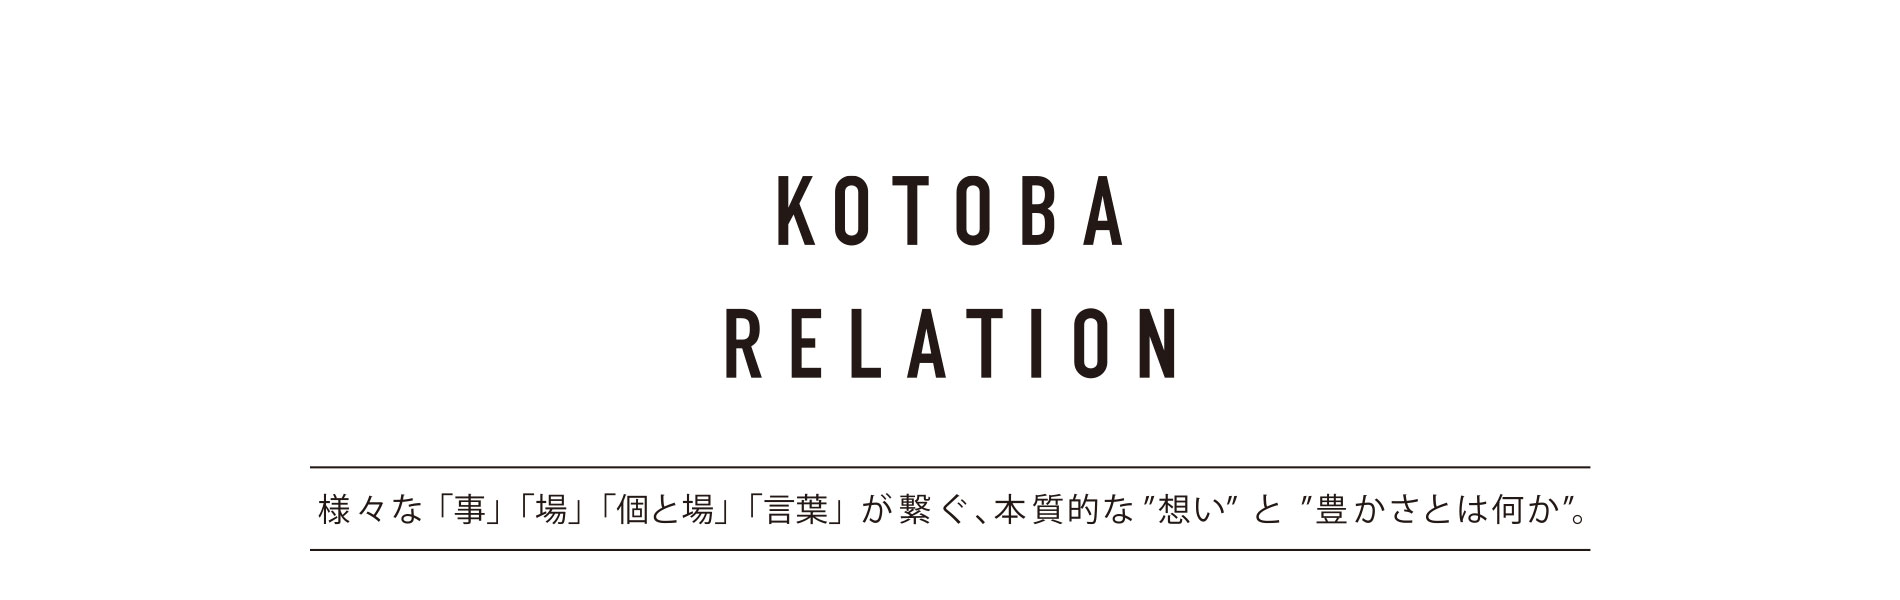 KOTOBA RELATION